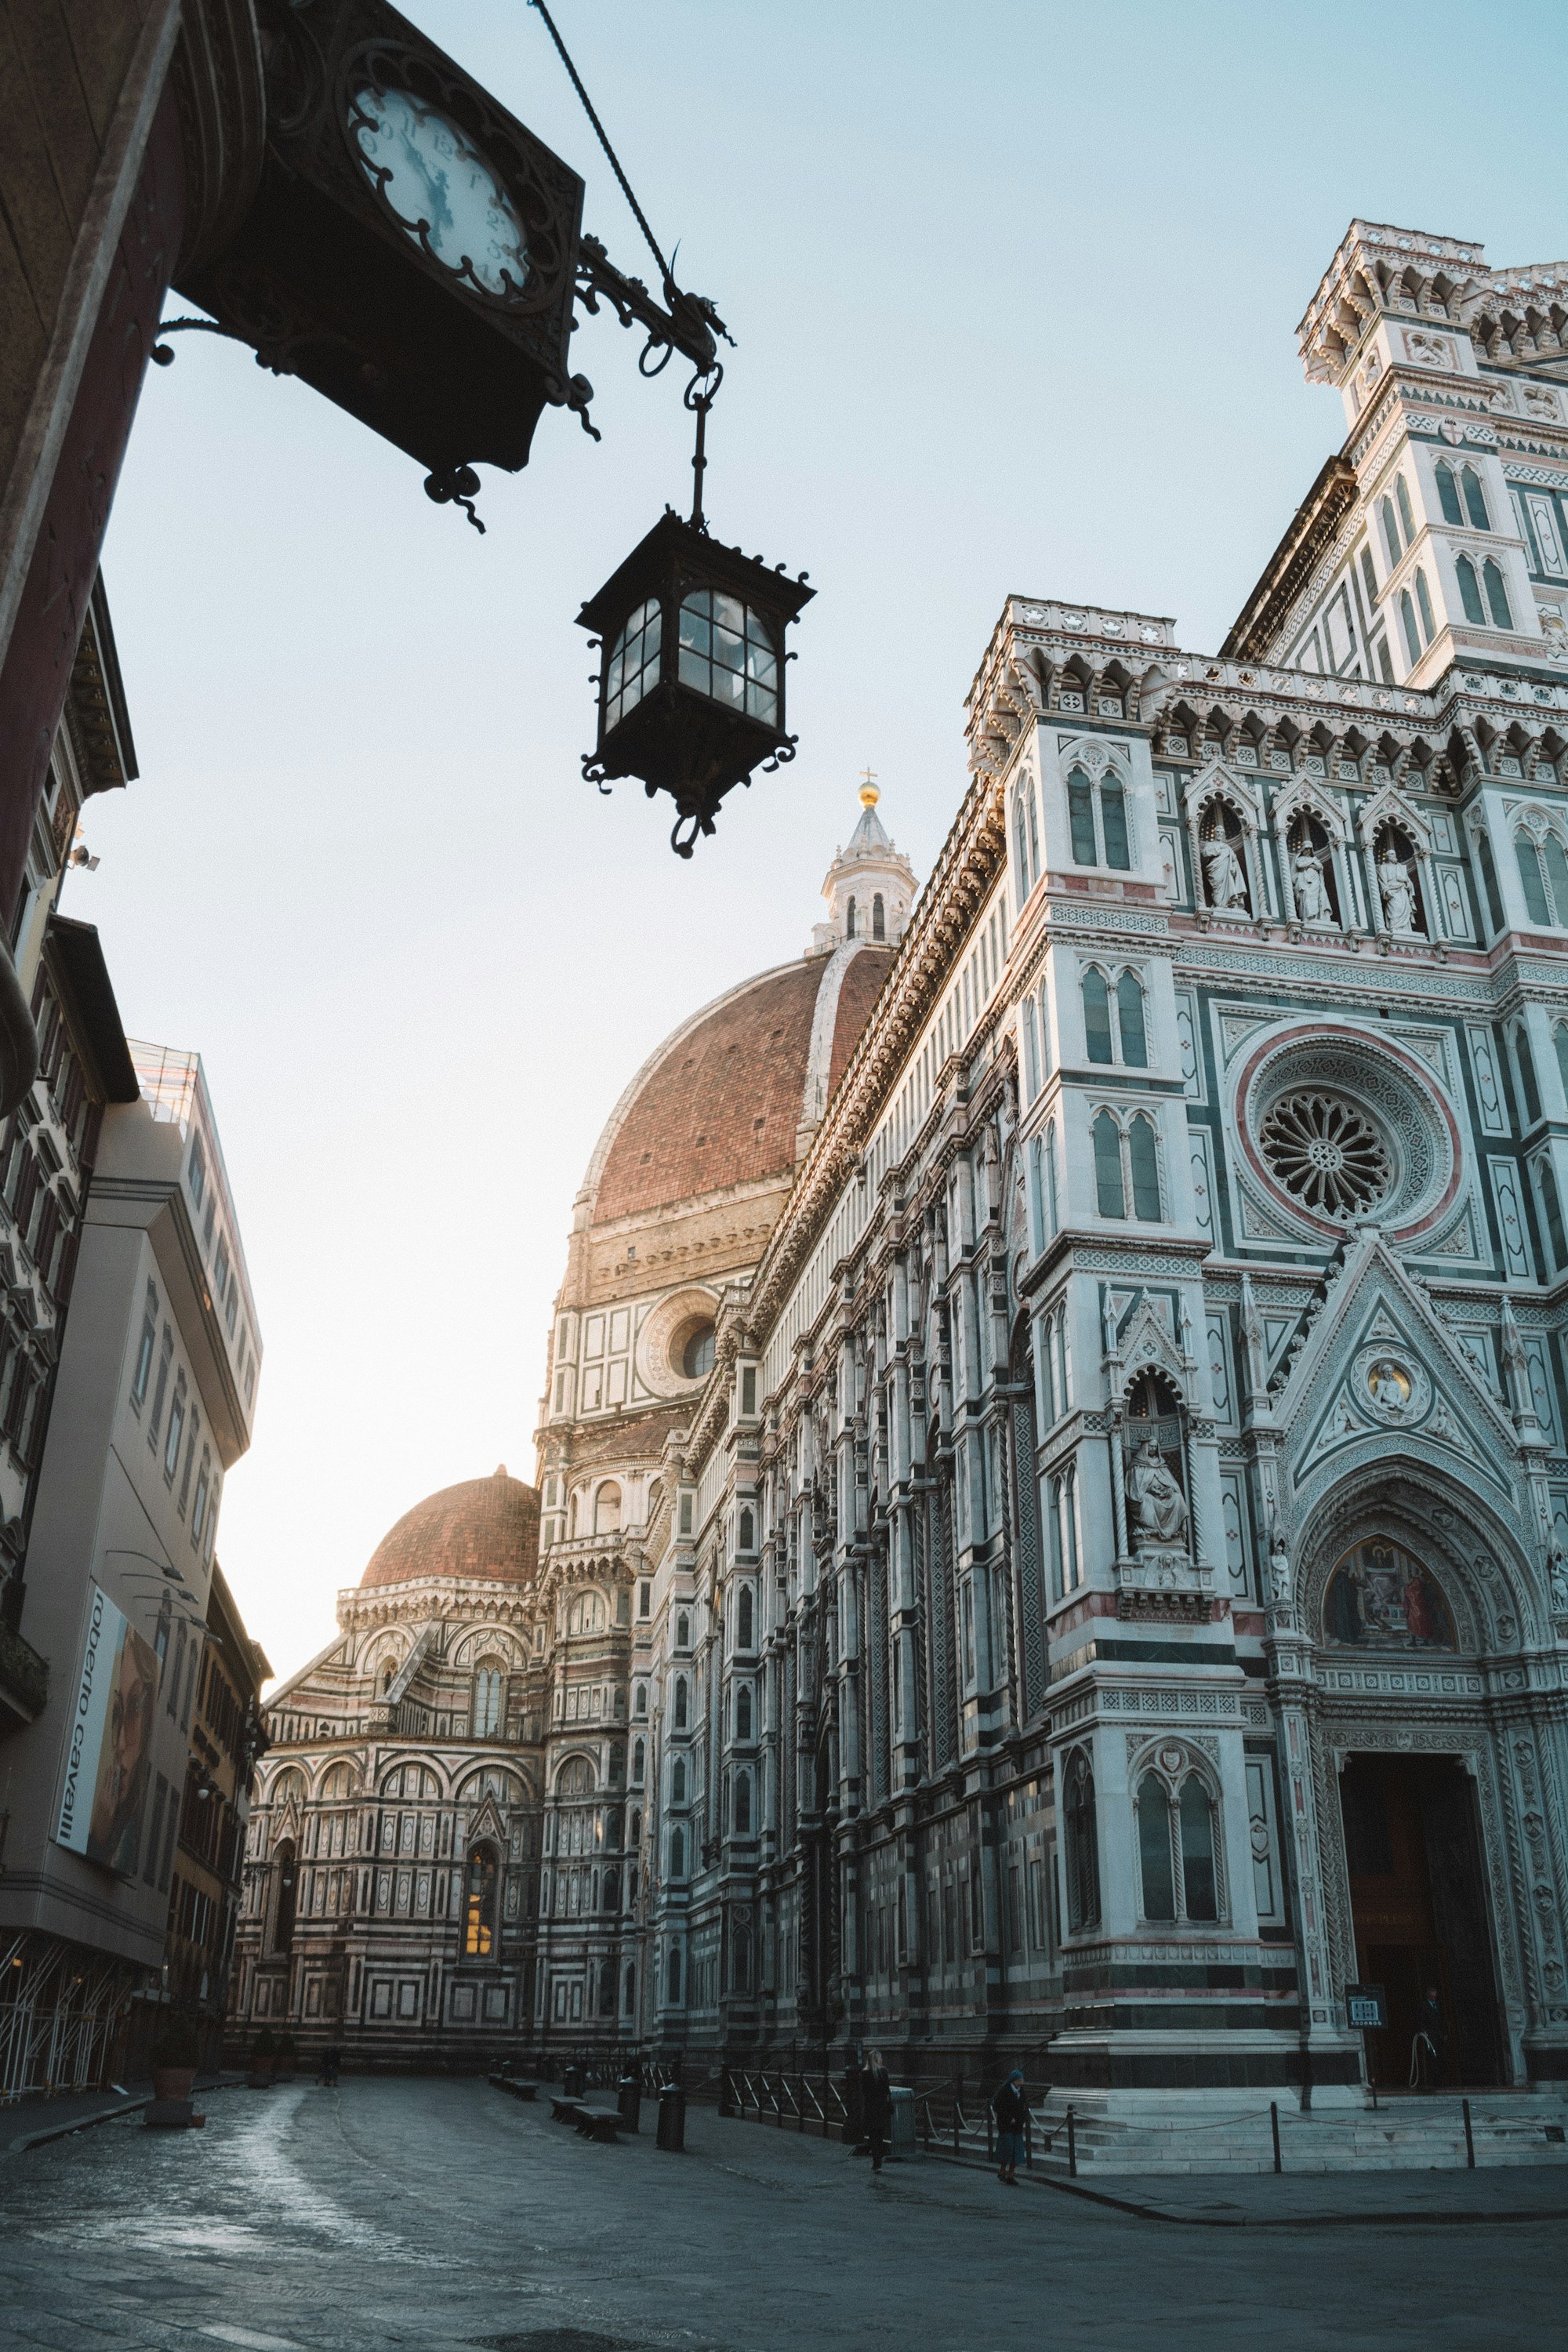 Firenze 2000 gloriosi anni di storia – Dal Punto più panoramico fino a Palazzo Pitti